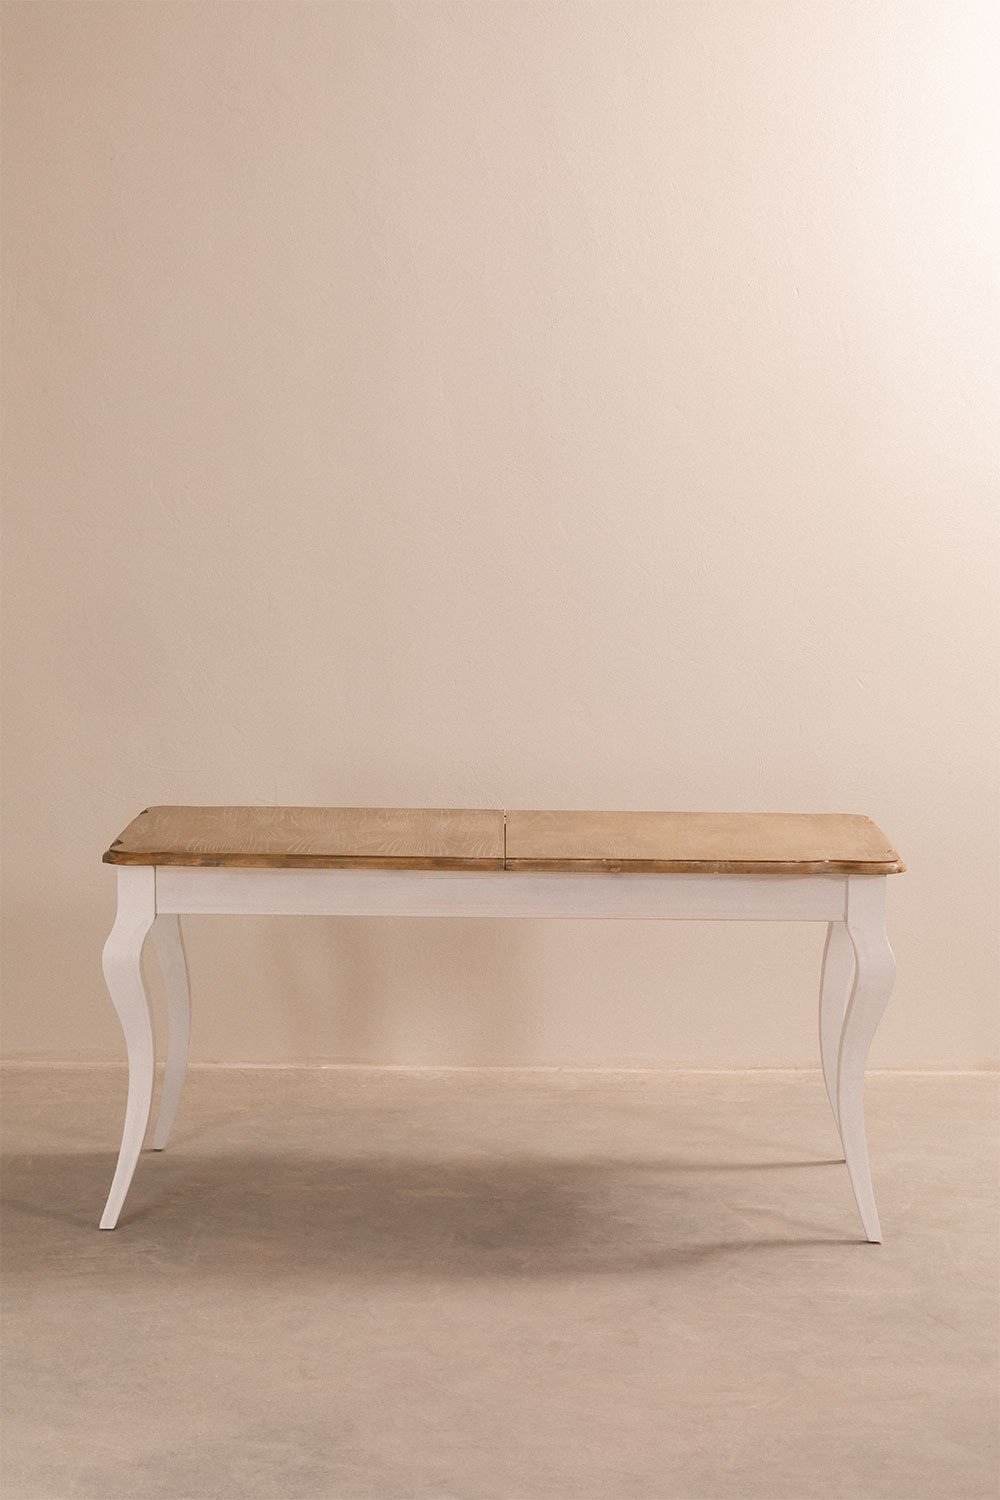 Tavolo da pranzo allungabile in legno (160-190x80 cm) Greyse, immagine della galleria 1